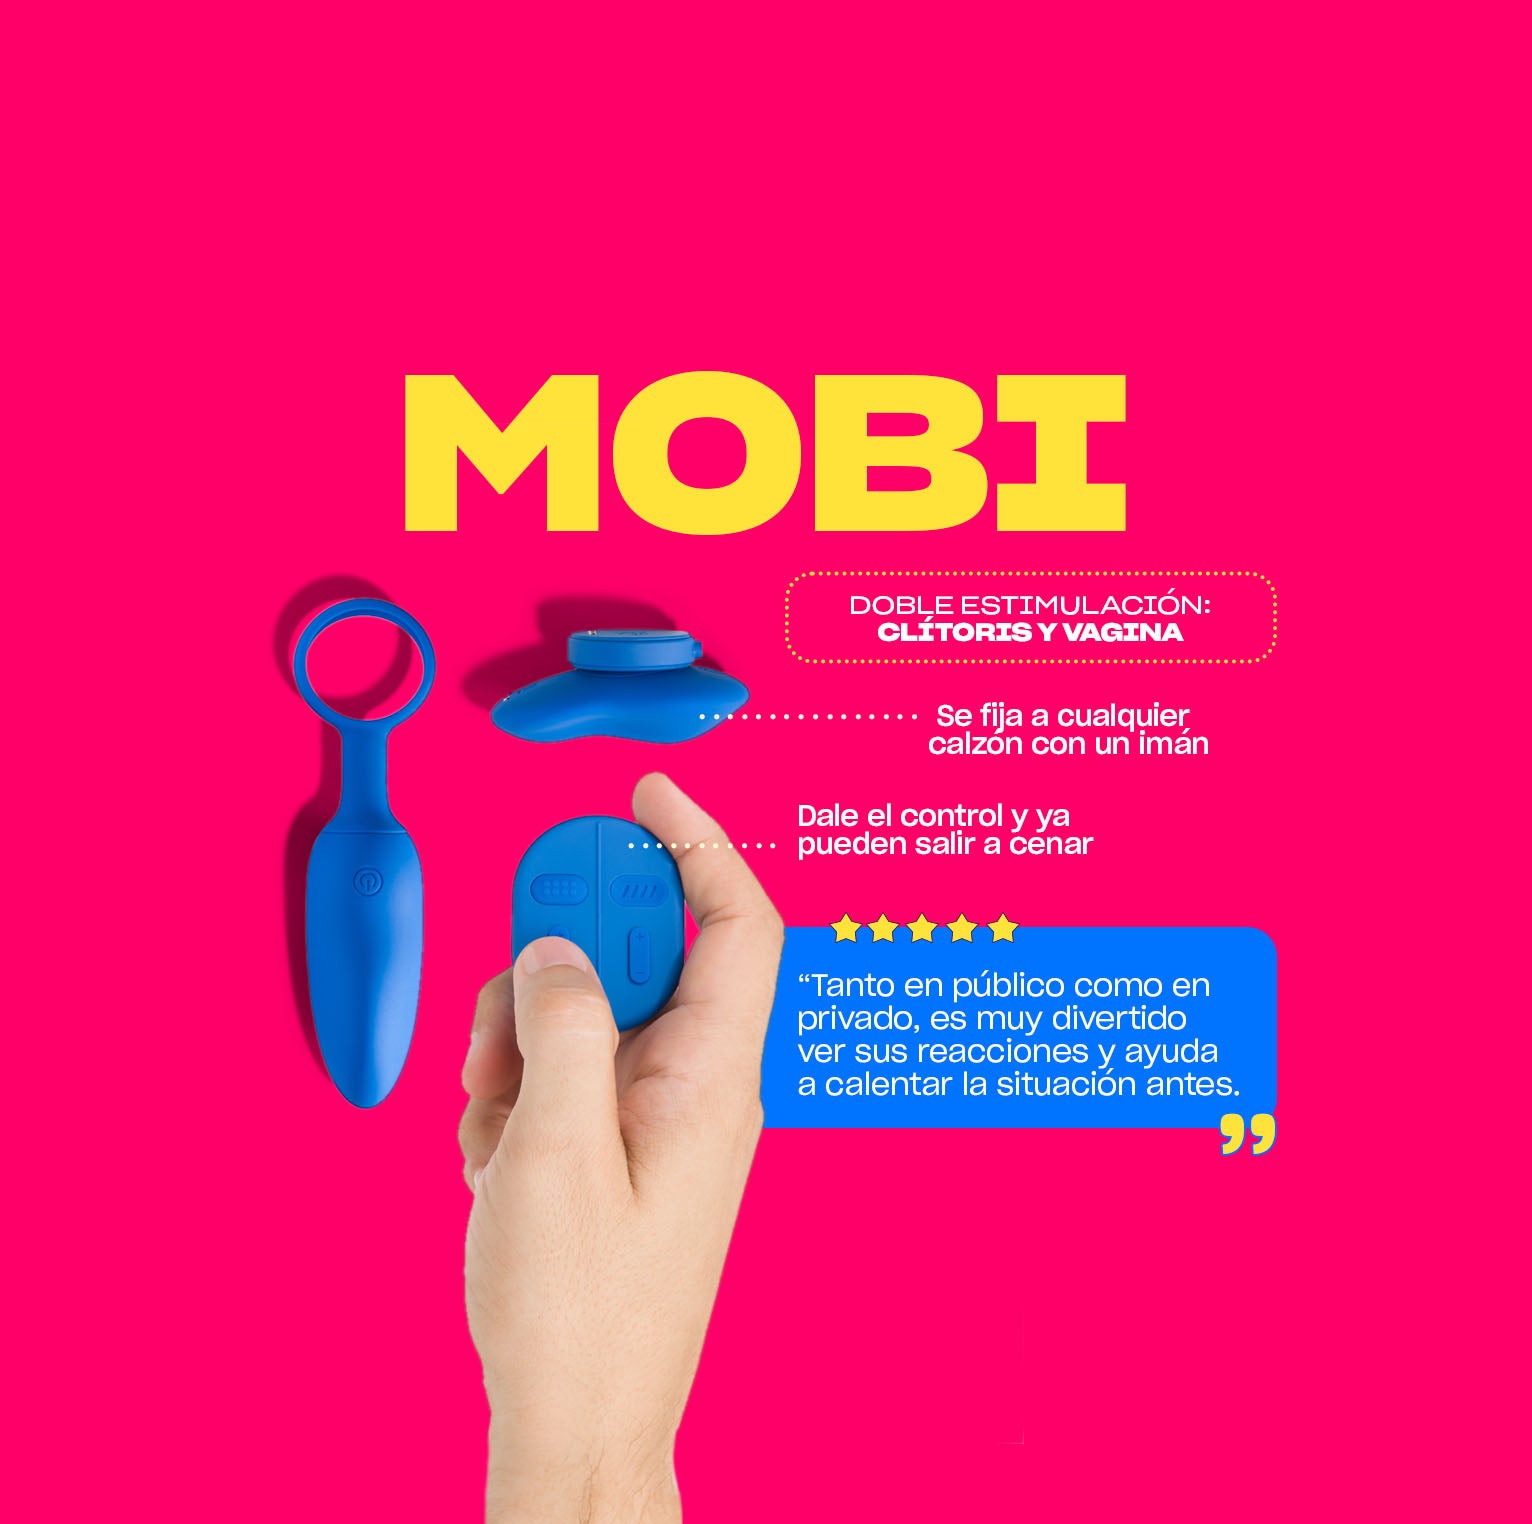 Mobi